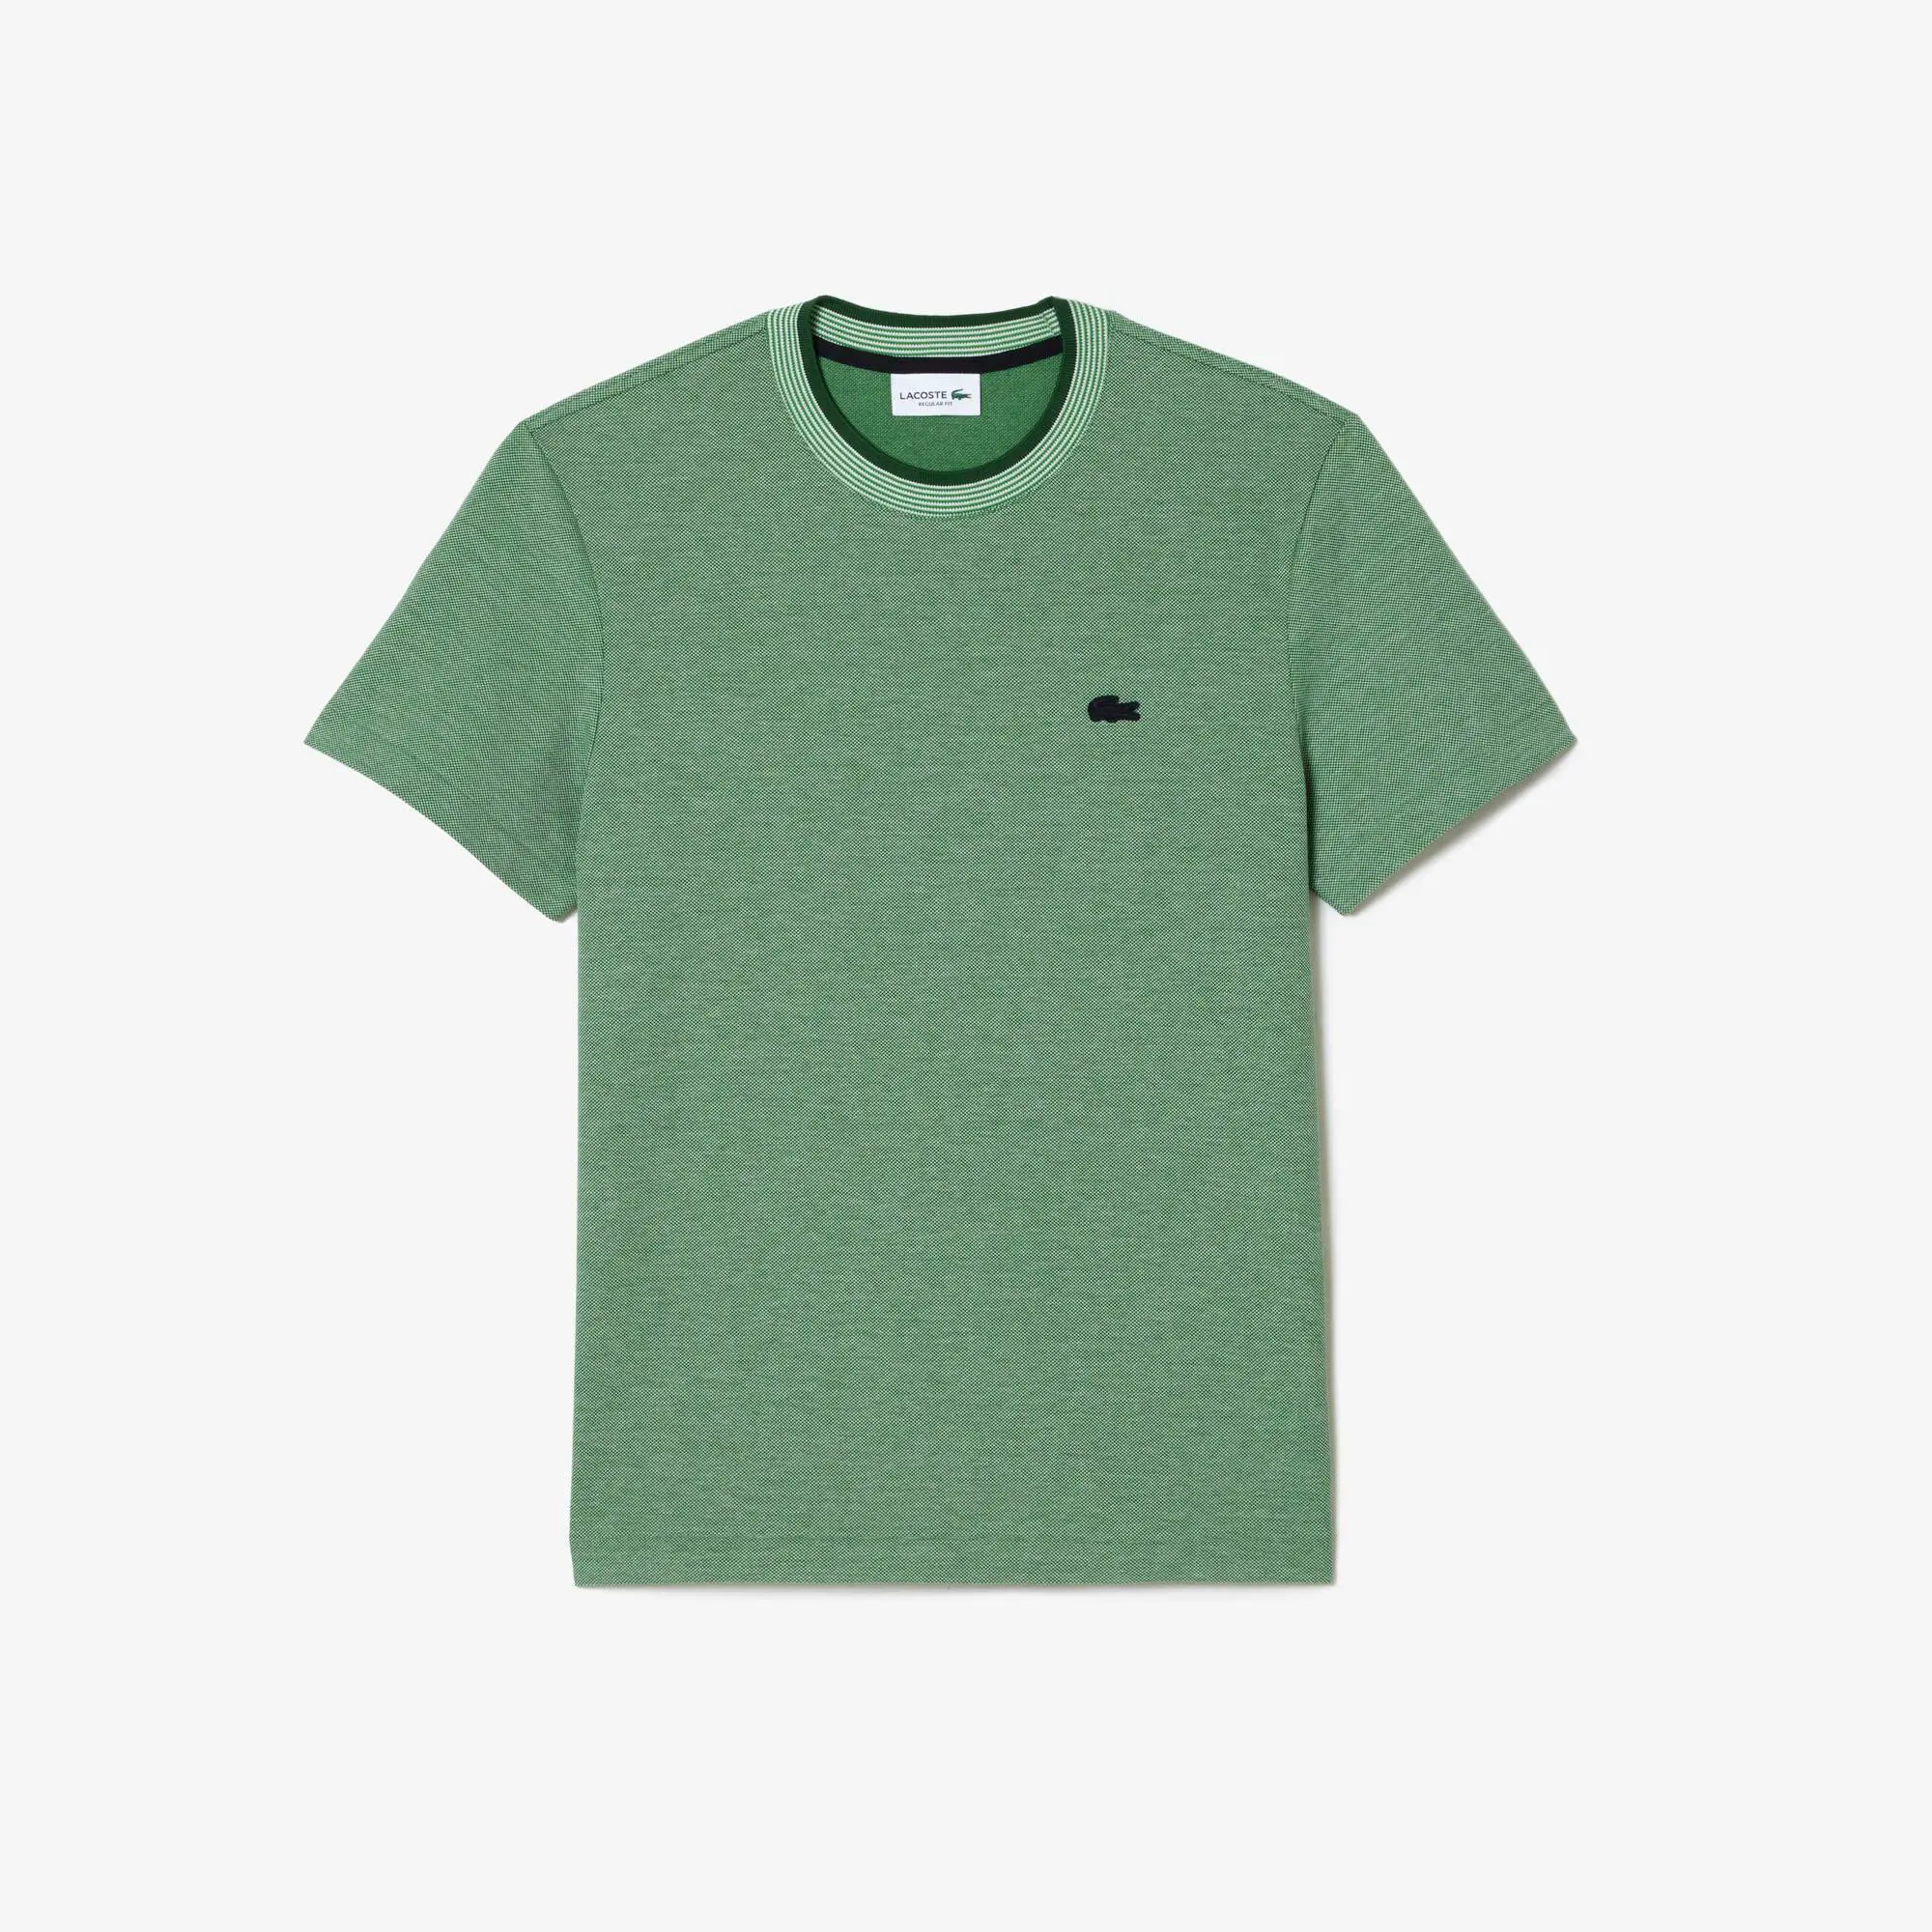 Lacoste Men’s Crew Neck Premium Cotton T-shirt. 2